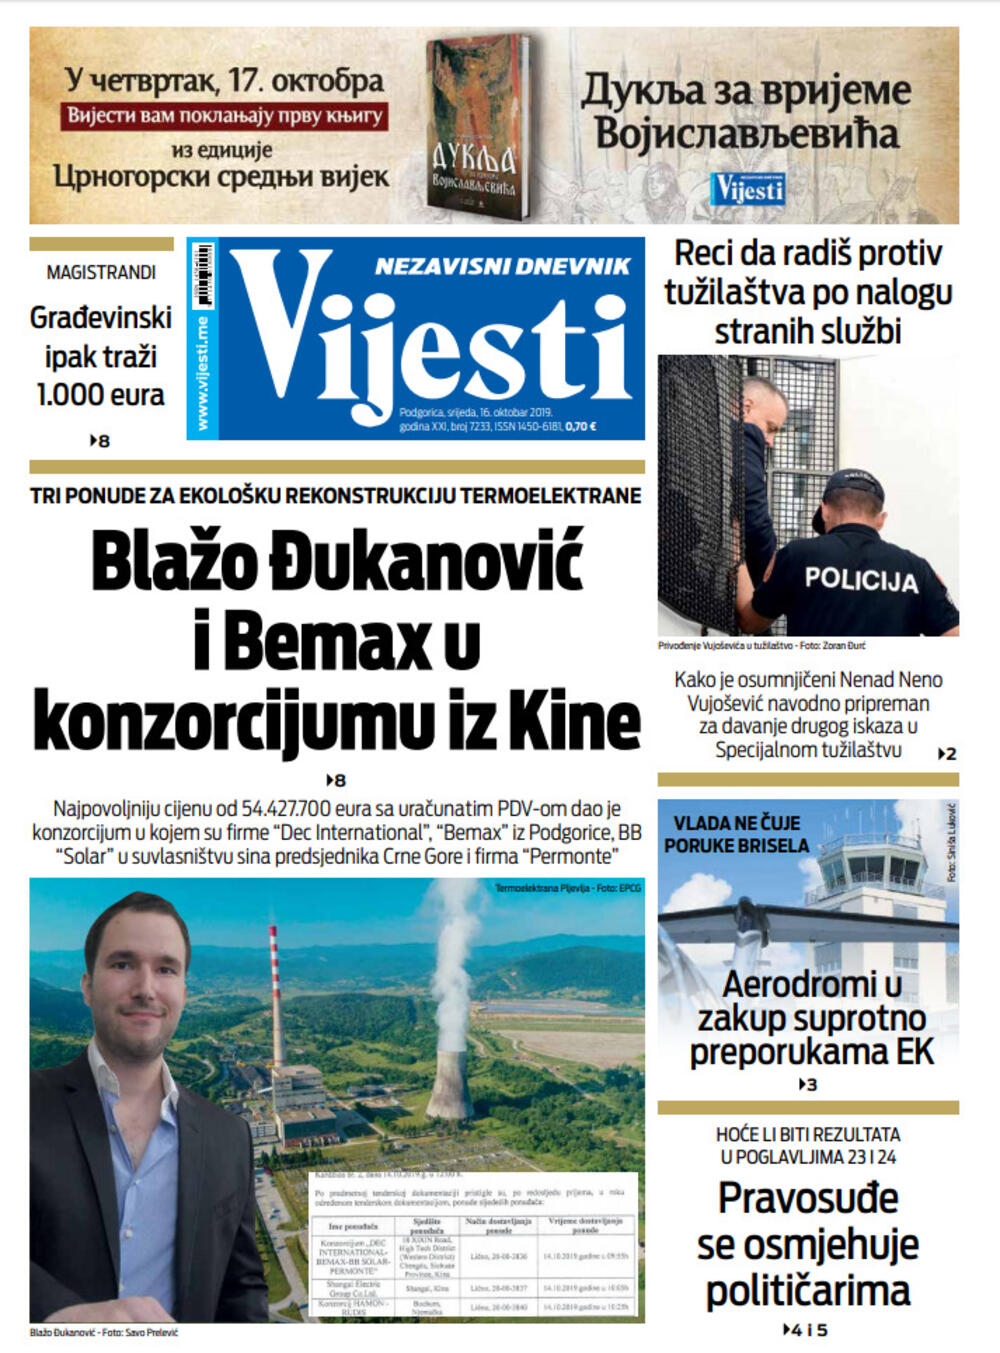 Naslovna strana "Vijesti" za 16. oktobar 2019. godine, Foto: Vijesti